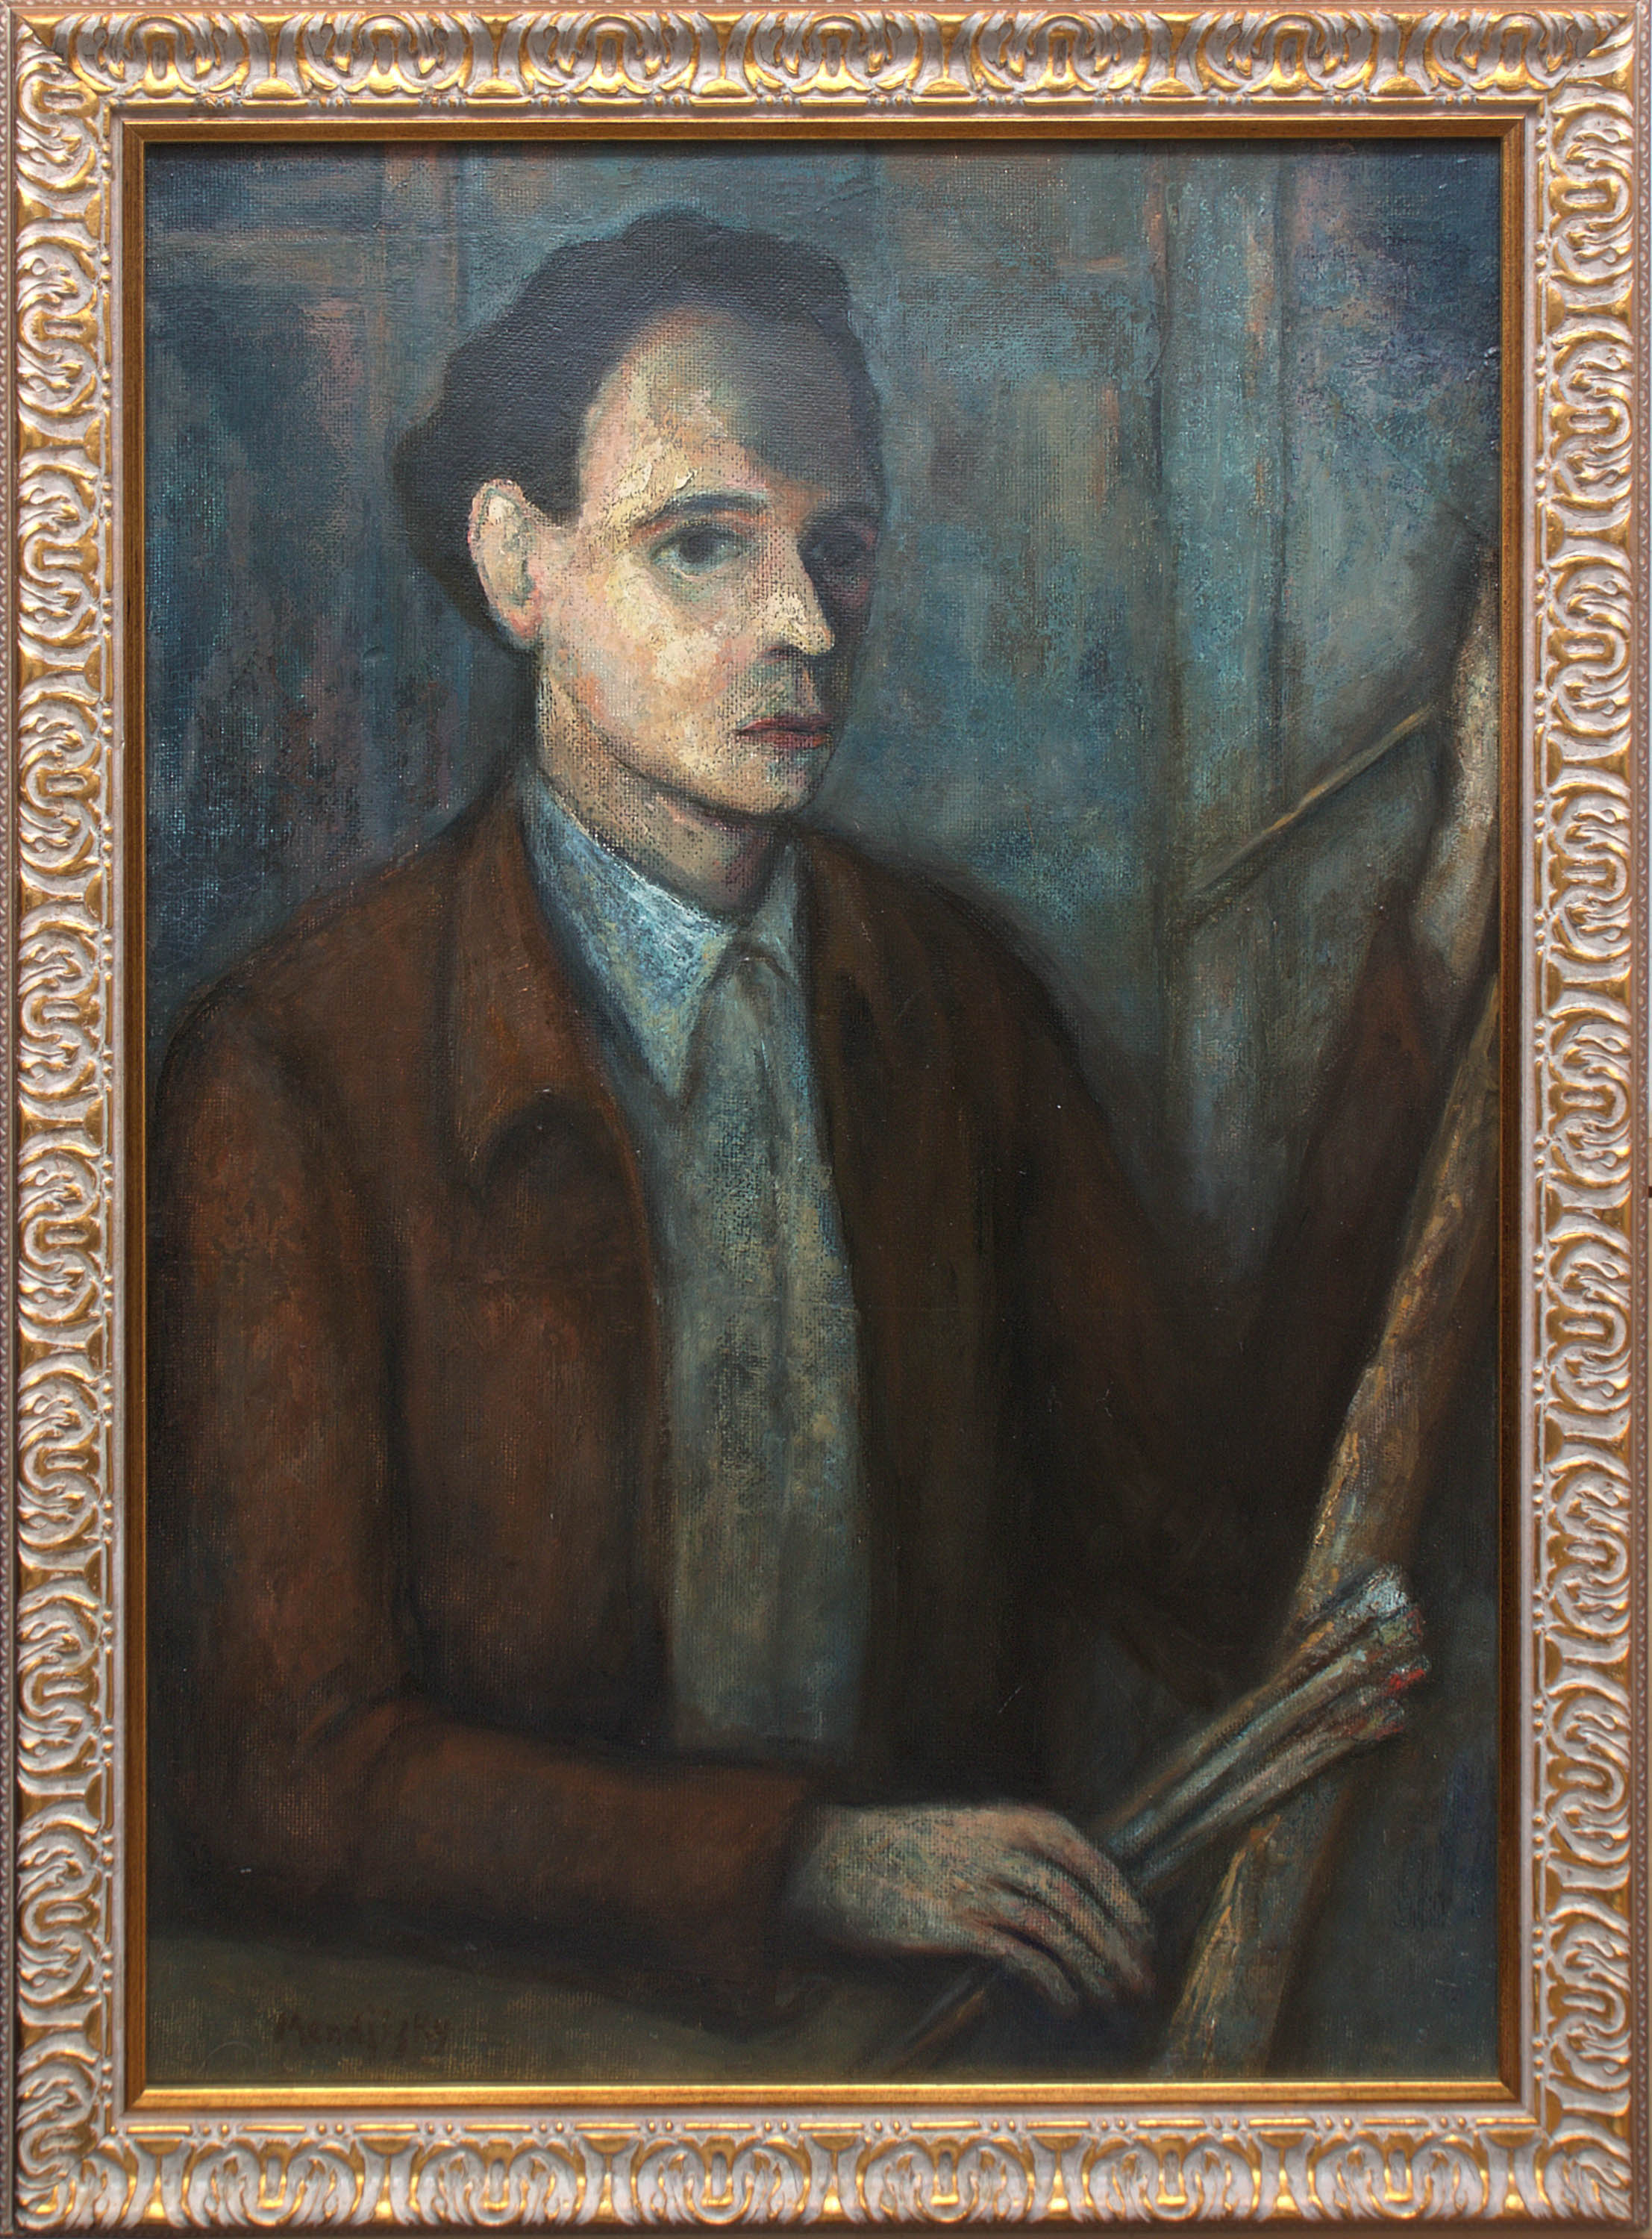 Maurycy Mędrzycki (Mendjizky Maurice) | Autoportret, ok. 1920